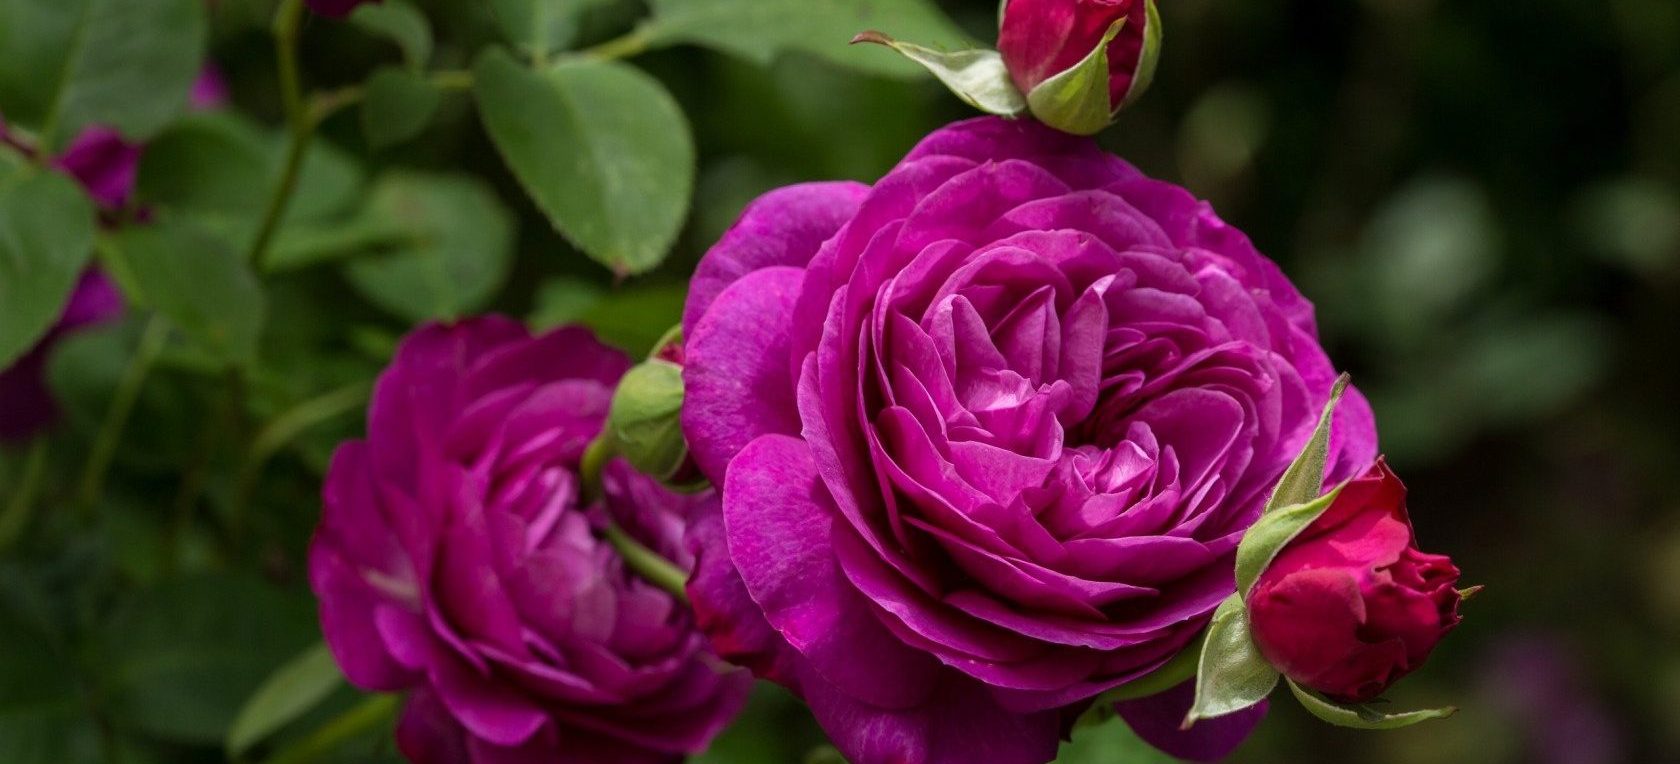 Декоративные кустарники и садовые многолетники: розы представят на выставке в «Аптекарском огороде». Фото предоставили в пресс-службе сада